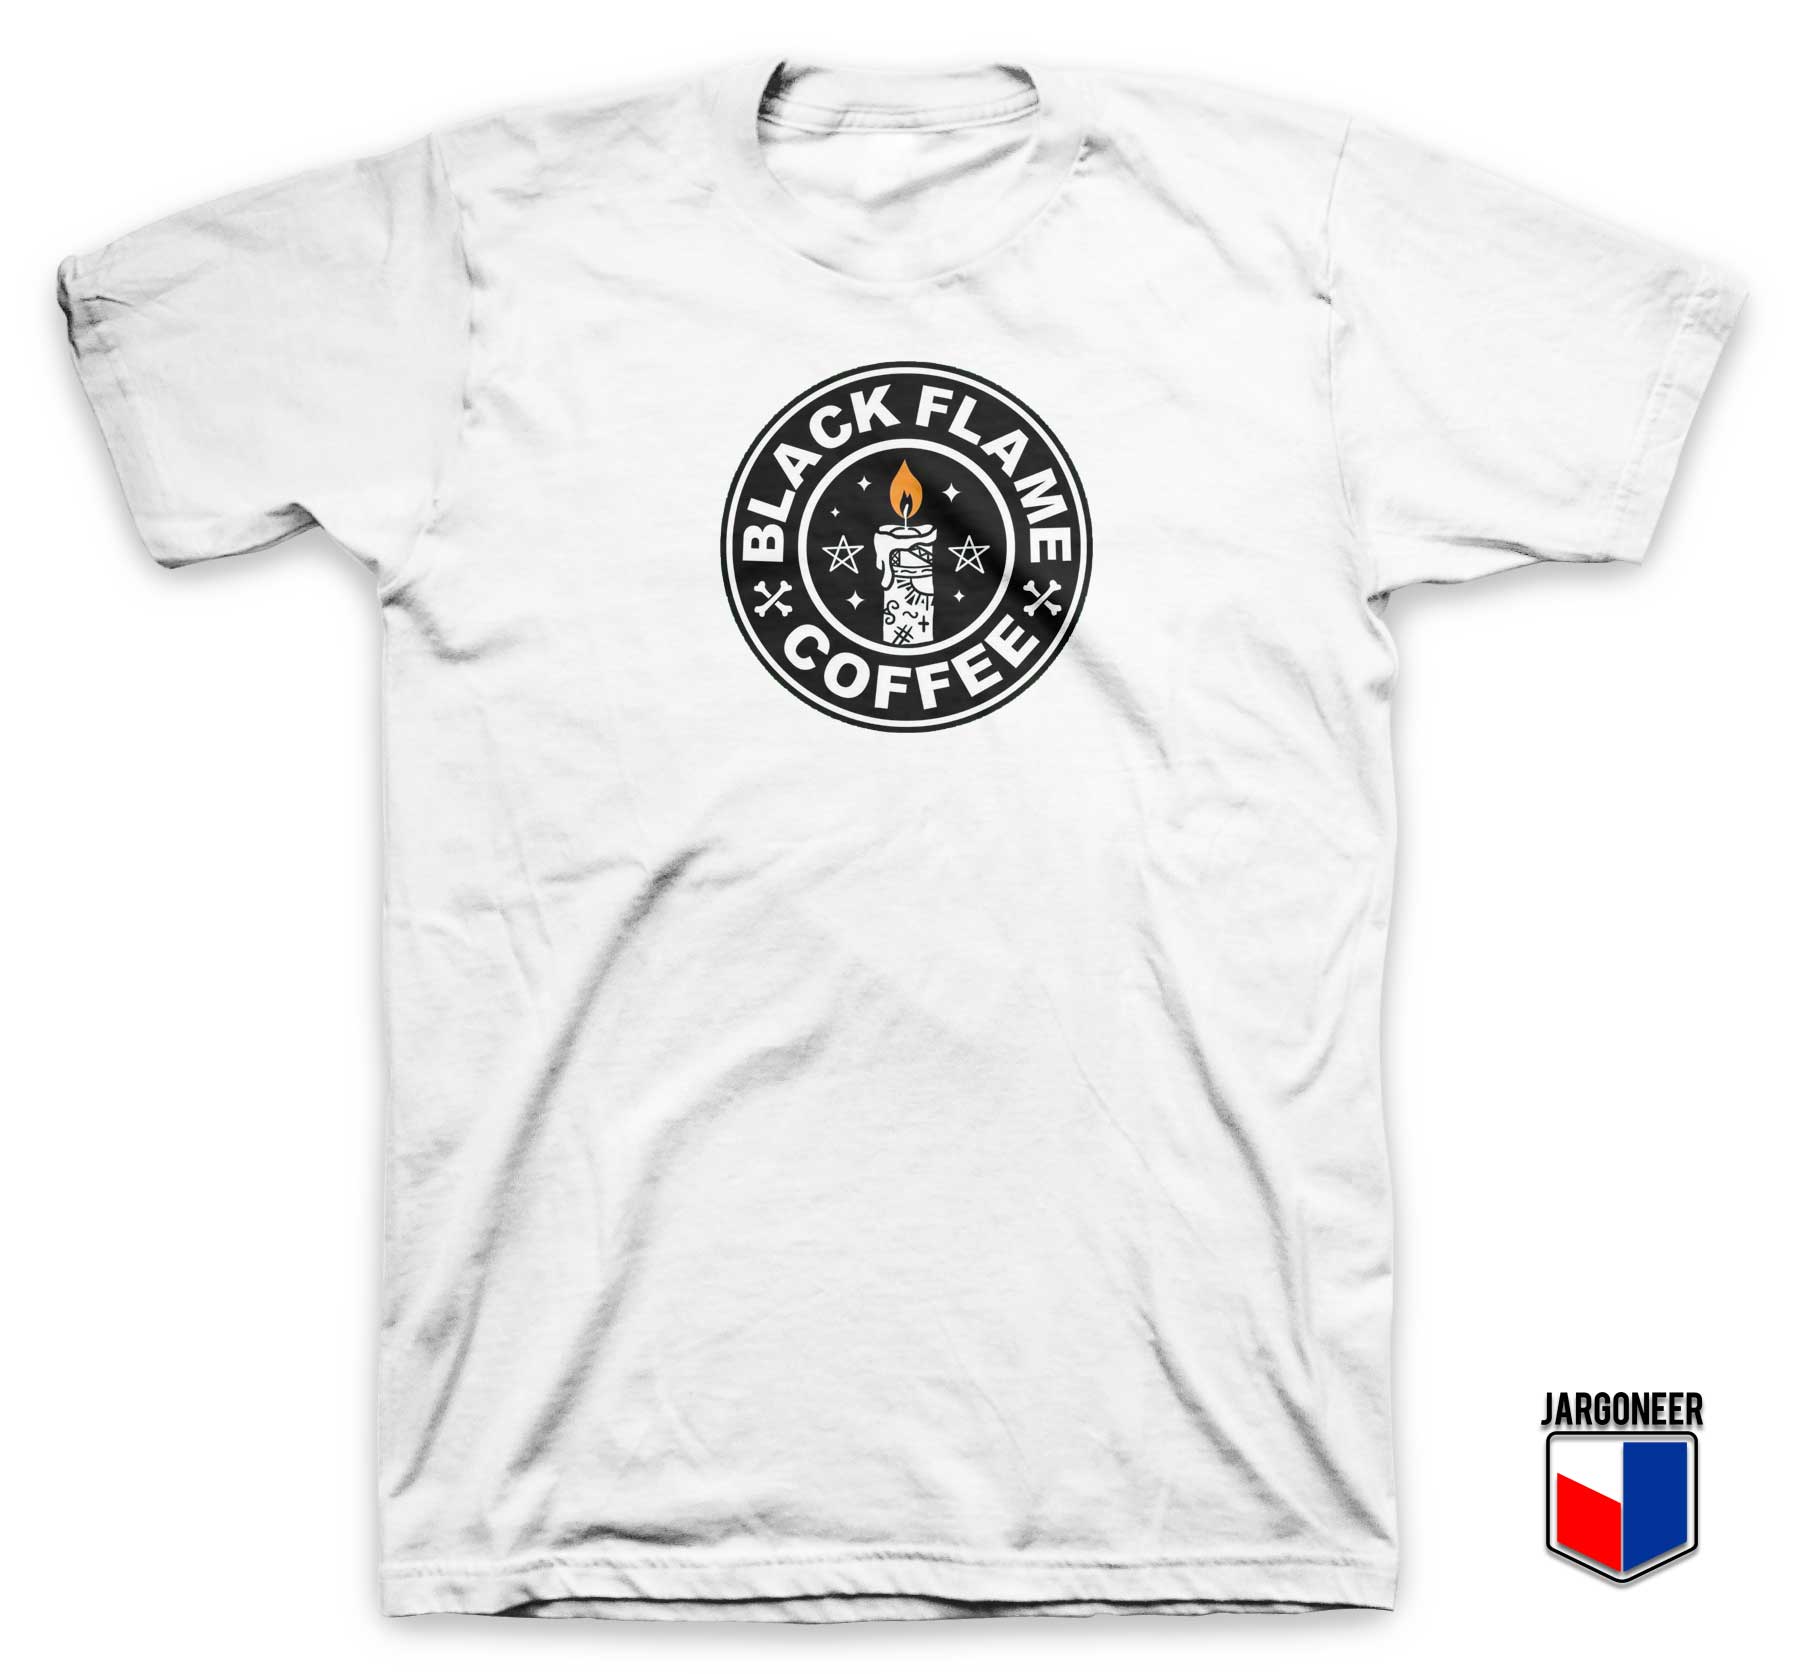 Hocus Pocus Black Flame Coffee T Shirt - Shop Unique Graphic Cool Shirt Designs